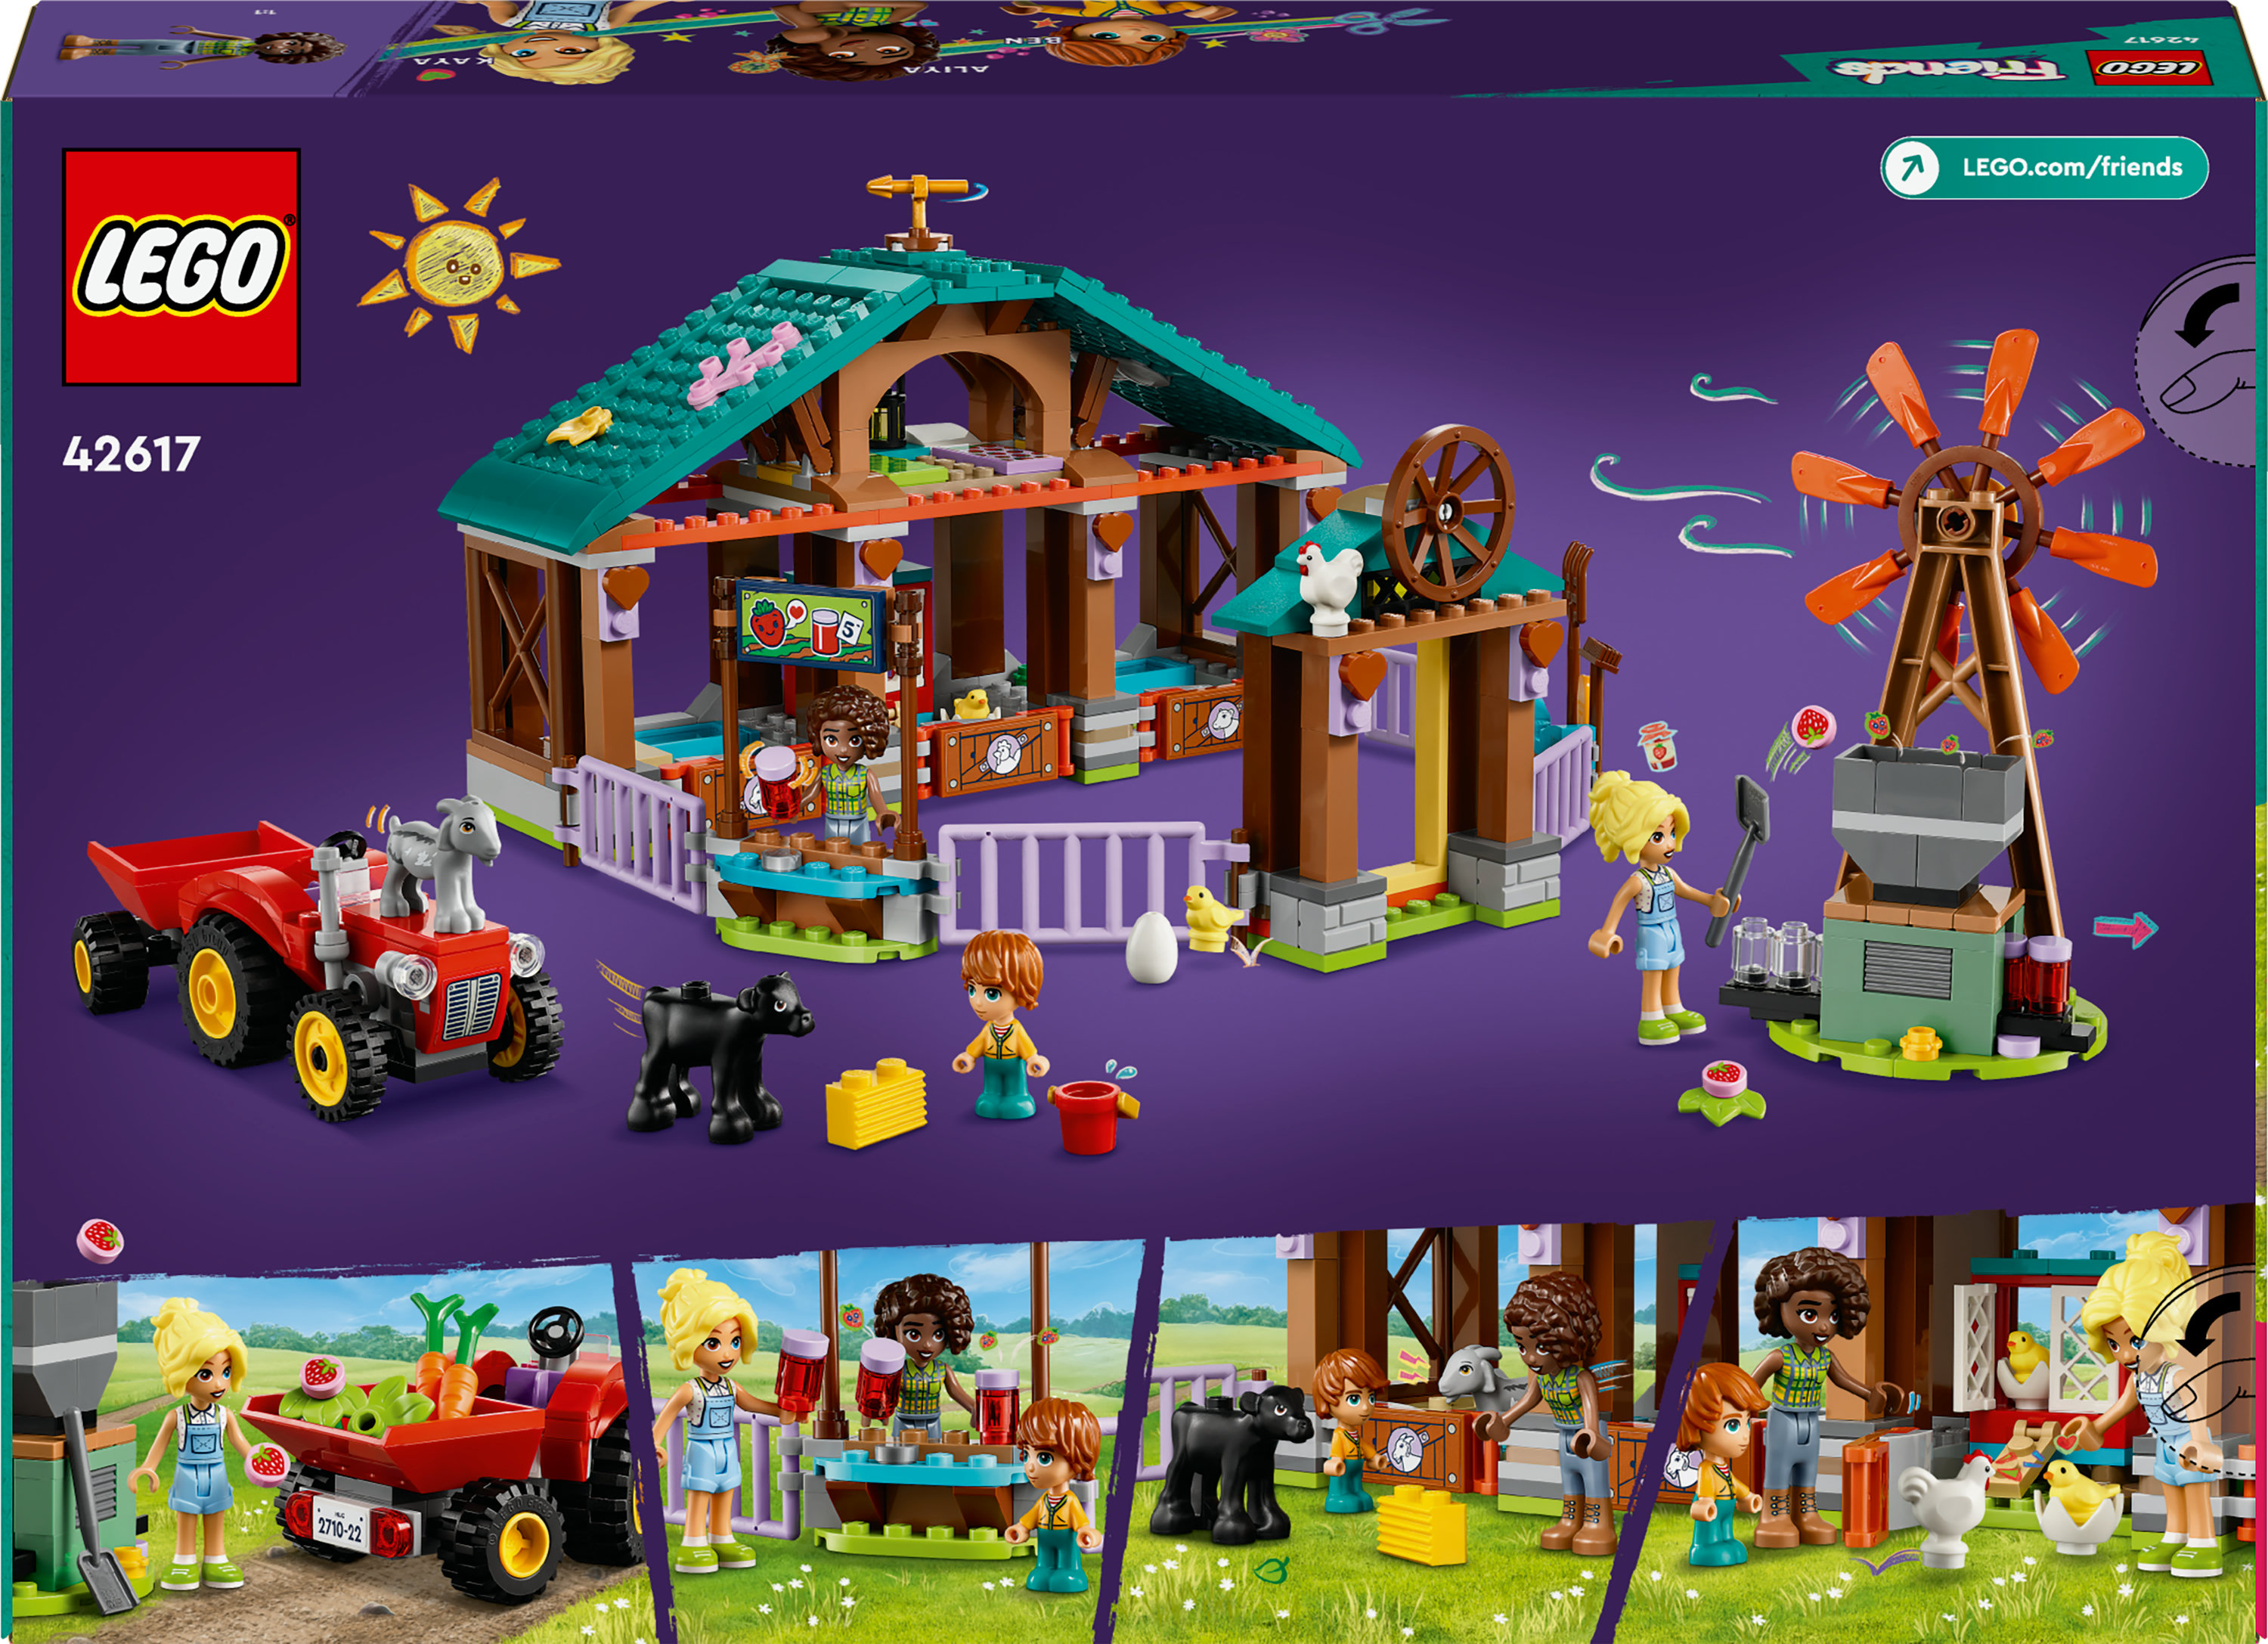 Конструктор LEGO Friends Приют для сельскохозяйственных животных 489 детали (42617) - фото 9